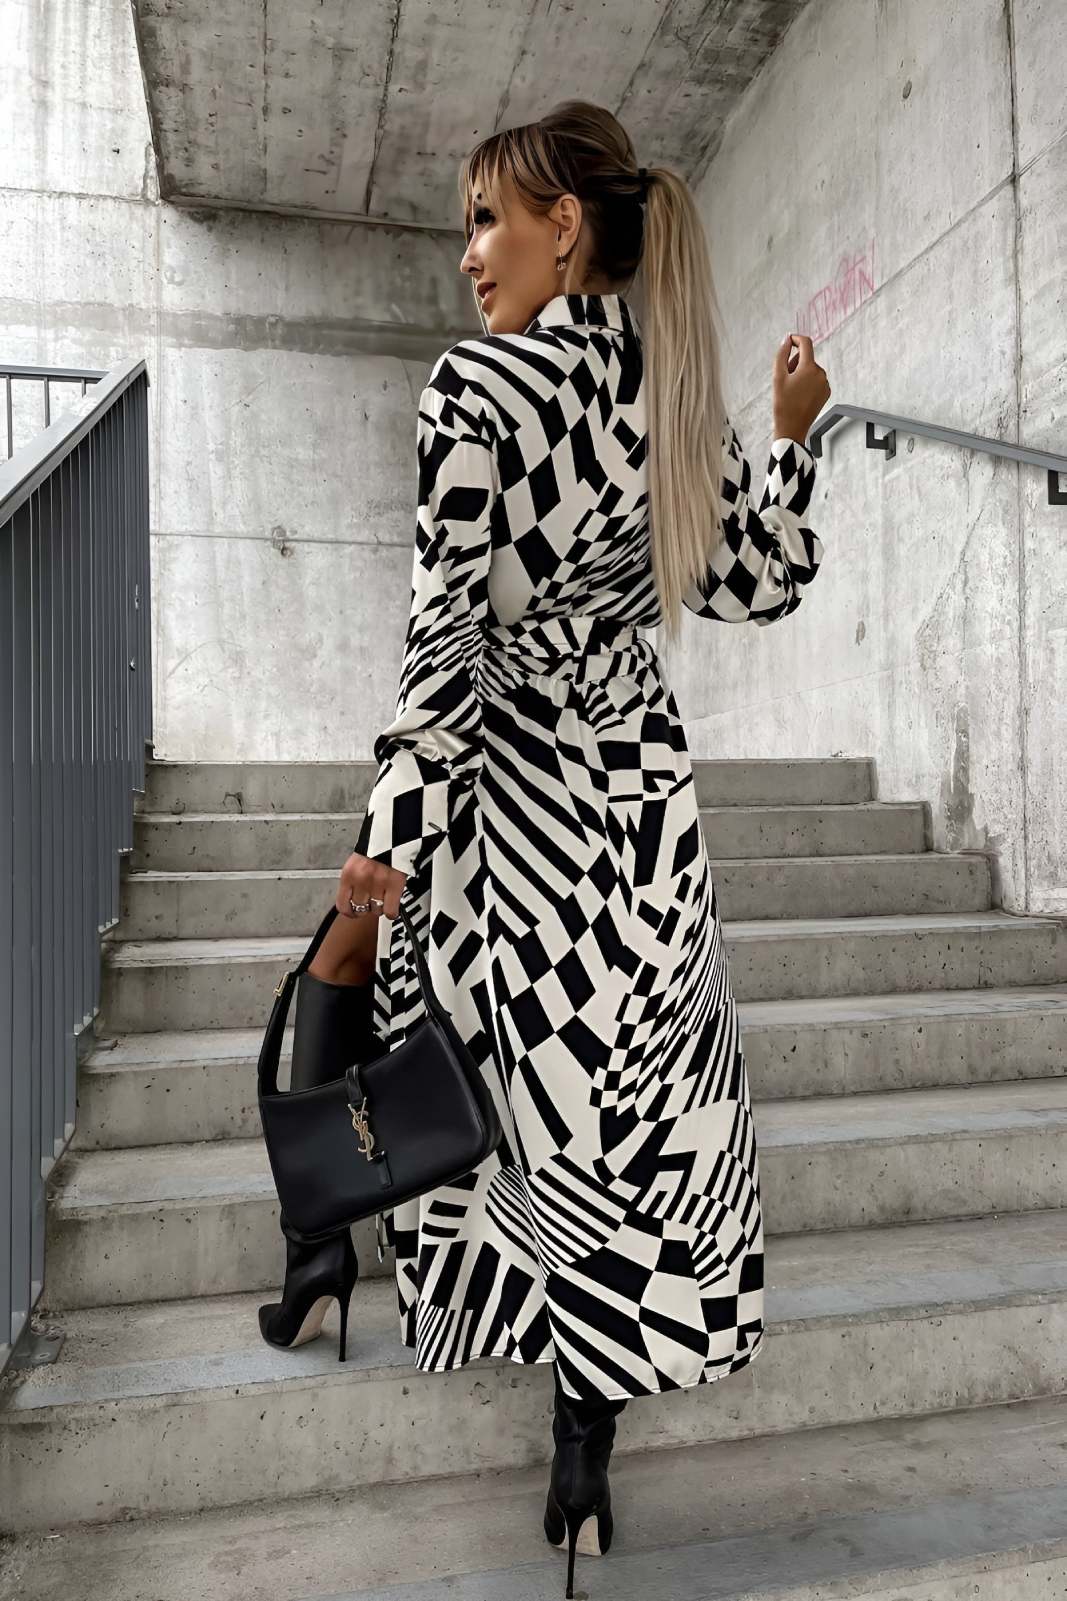 Φορεμα midi 'Impero' με γεωμετρικα σχεδια - Μαυρο/Λευκο